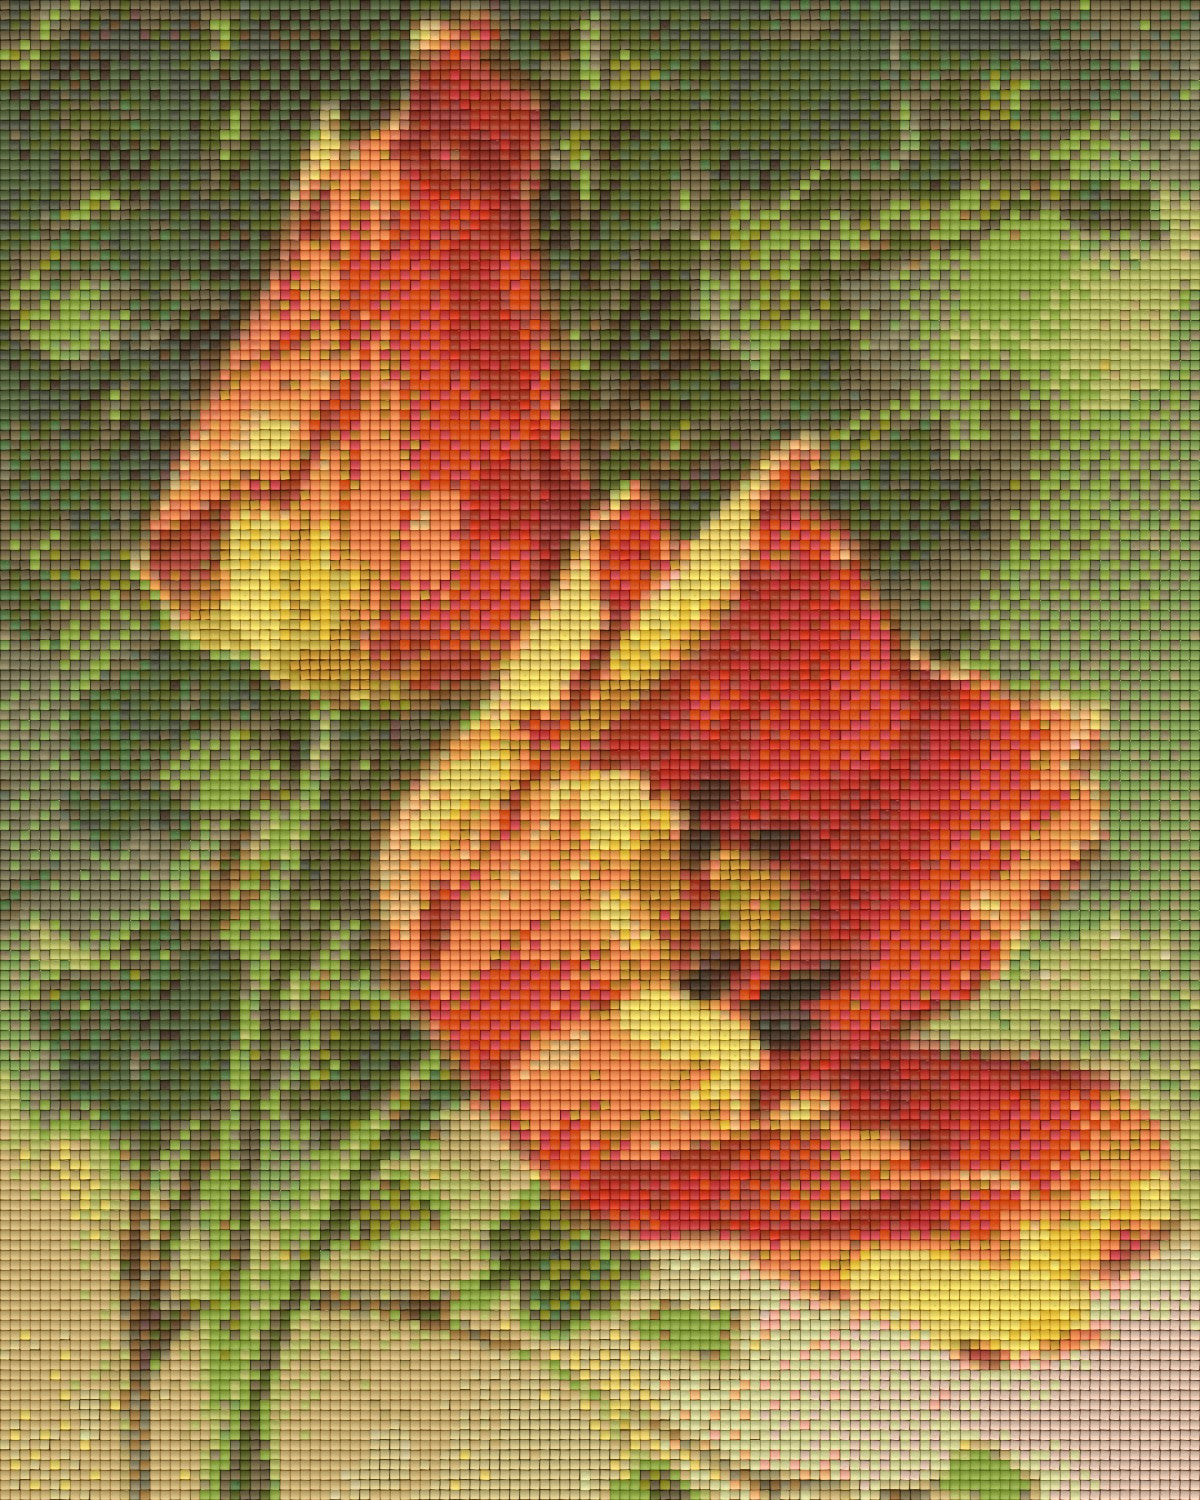 Pixelhobby Classic Set - Antique Tulips